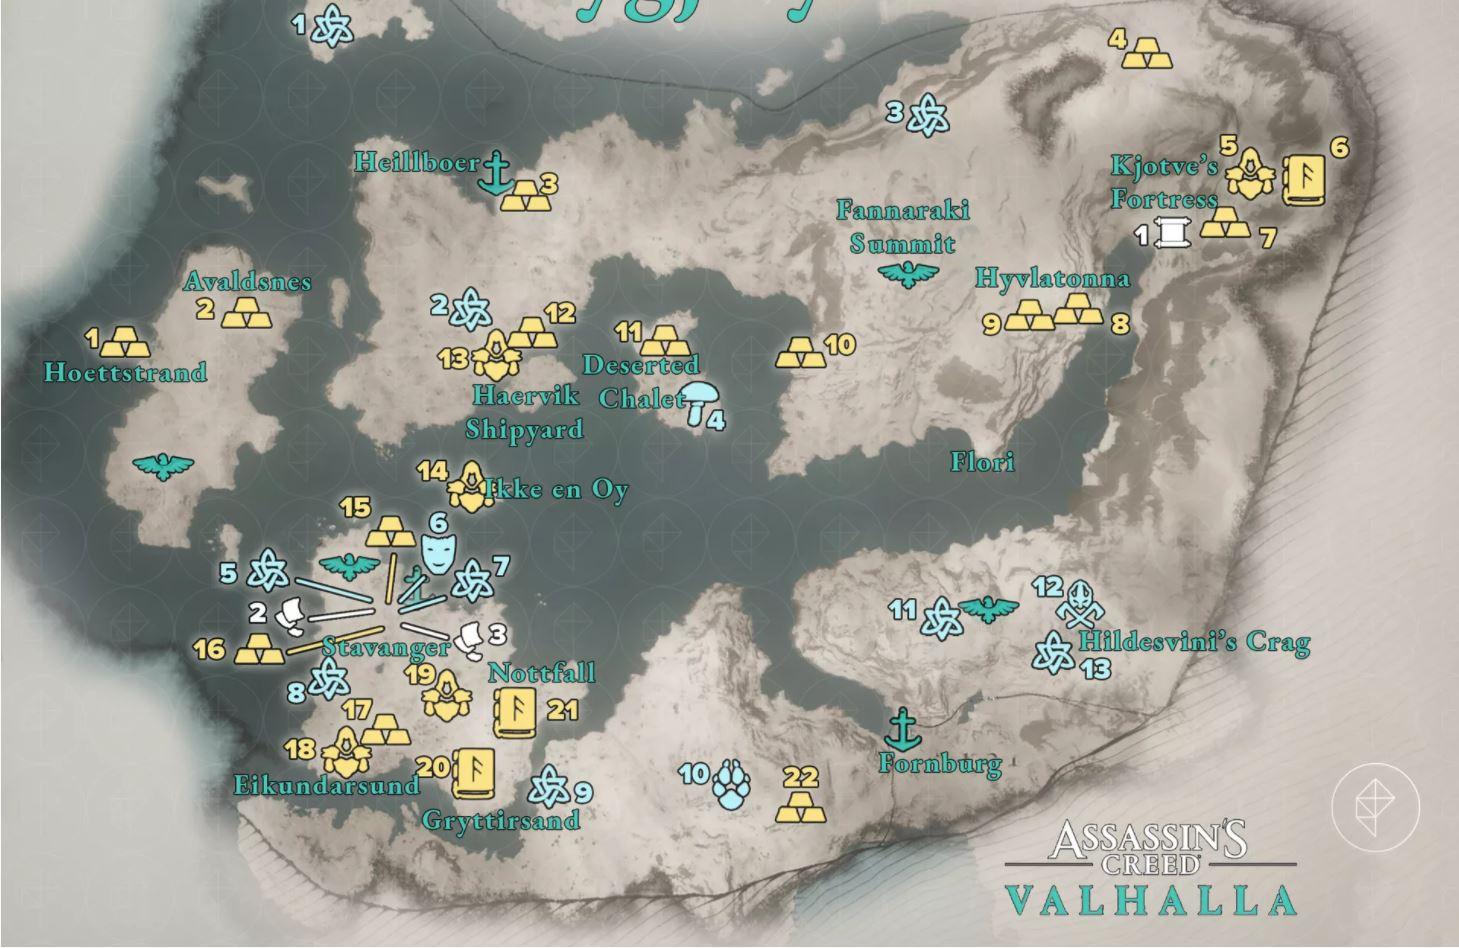 Slik ser Rygjafylke (Ryfylke) ut i spillet Assassin's Creed Valhalla. Her er flere kjente stedsnavn som Stavanger, Avaldsnes, Eikundarsund (Egersund) og Florli. 